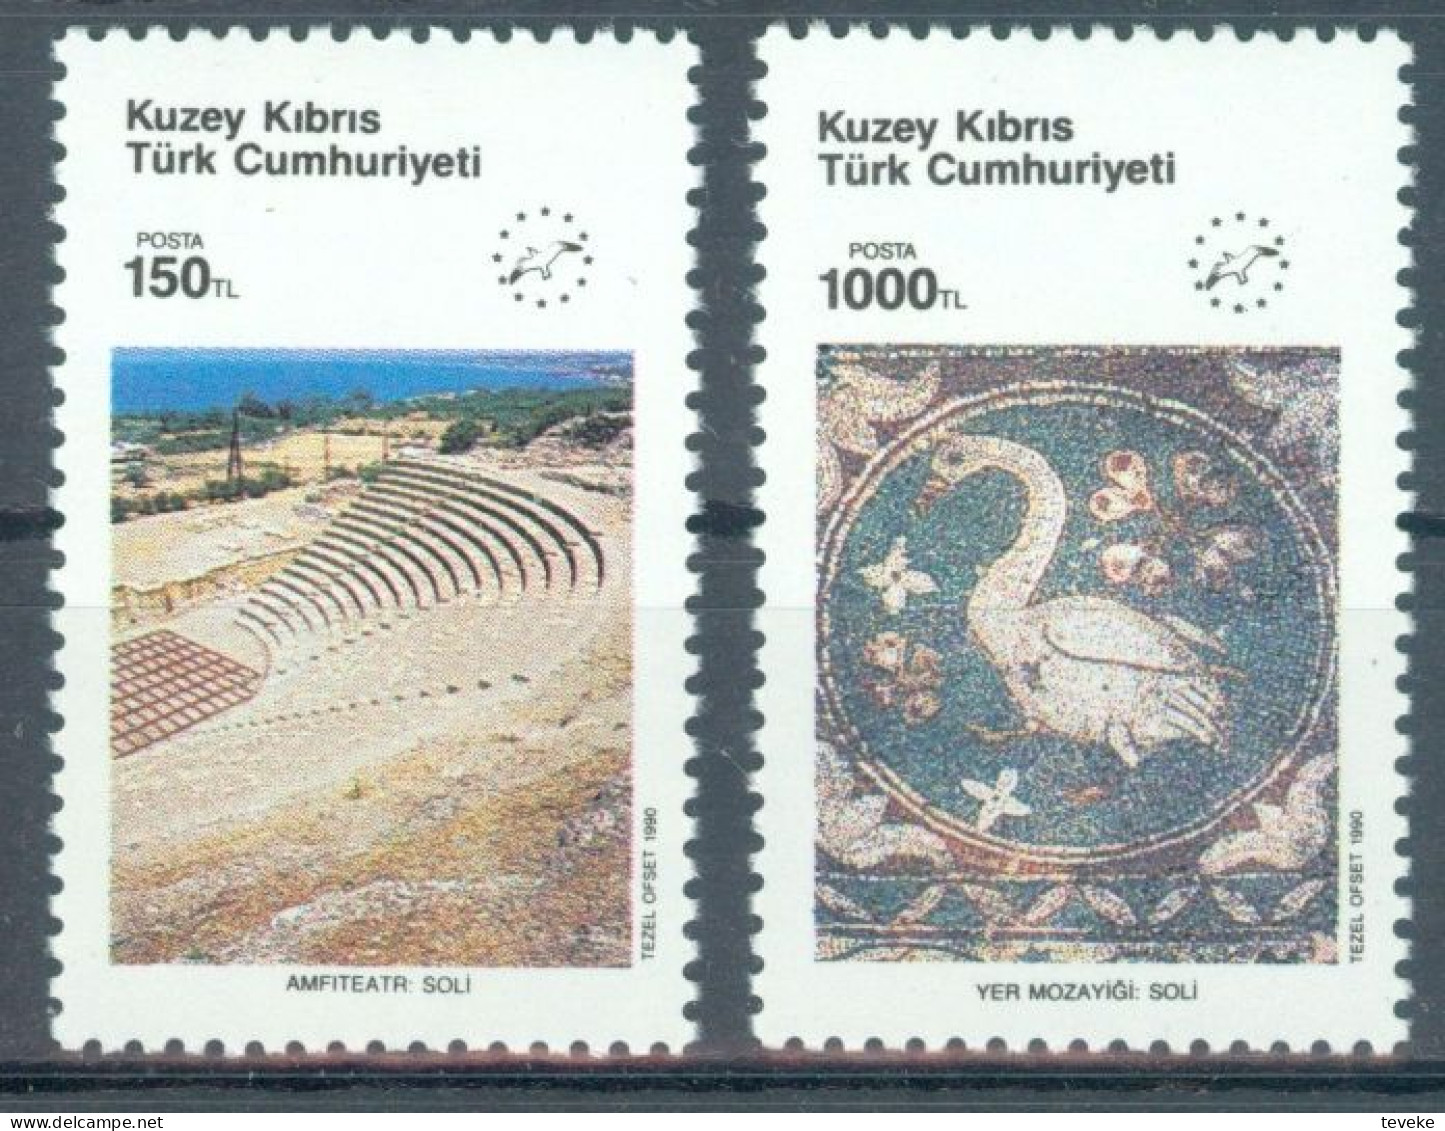 TURKISH CYPRUS 1990 - Michel Nr. 283/284 - MNH ** - European Year Of Tourism - Ungebraucht